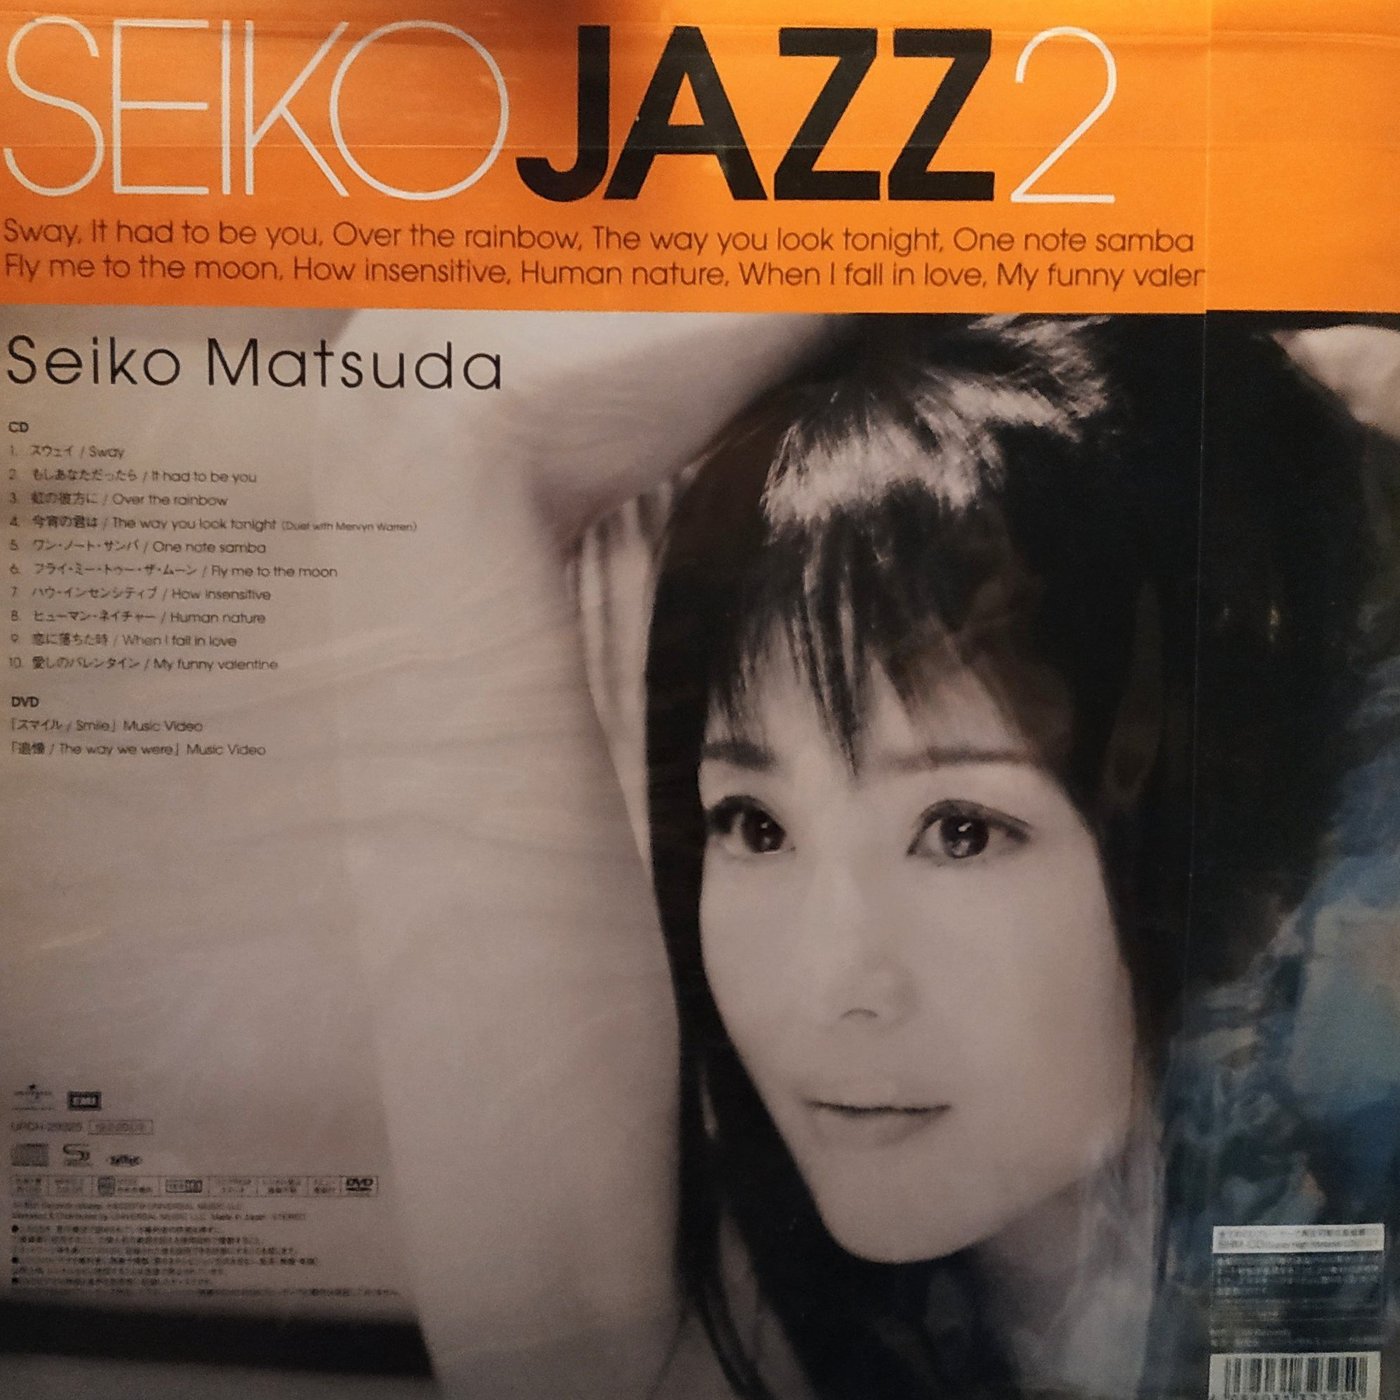 日版全新未拆 - SEIKO JAZZ 2 【初回限定盤B】(SHM-CD+DVD+LP 